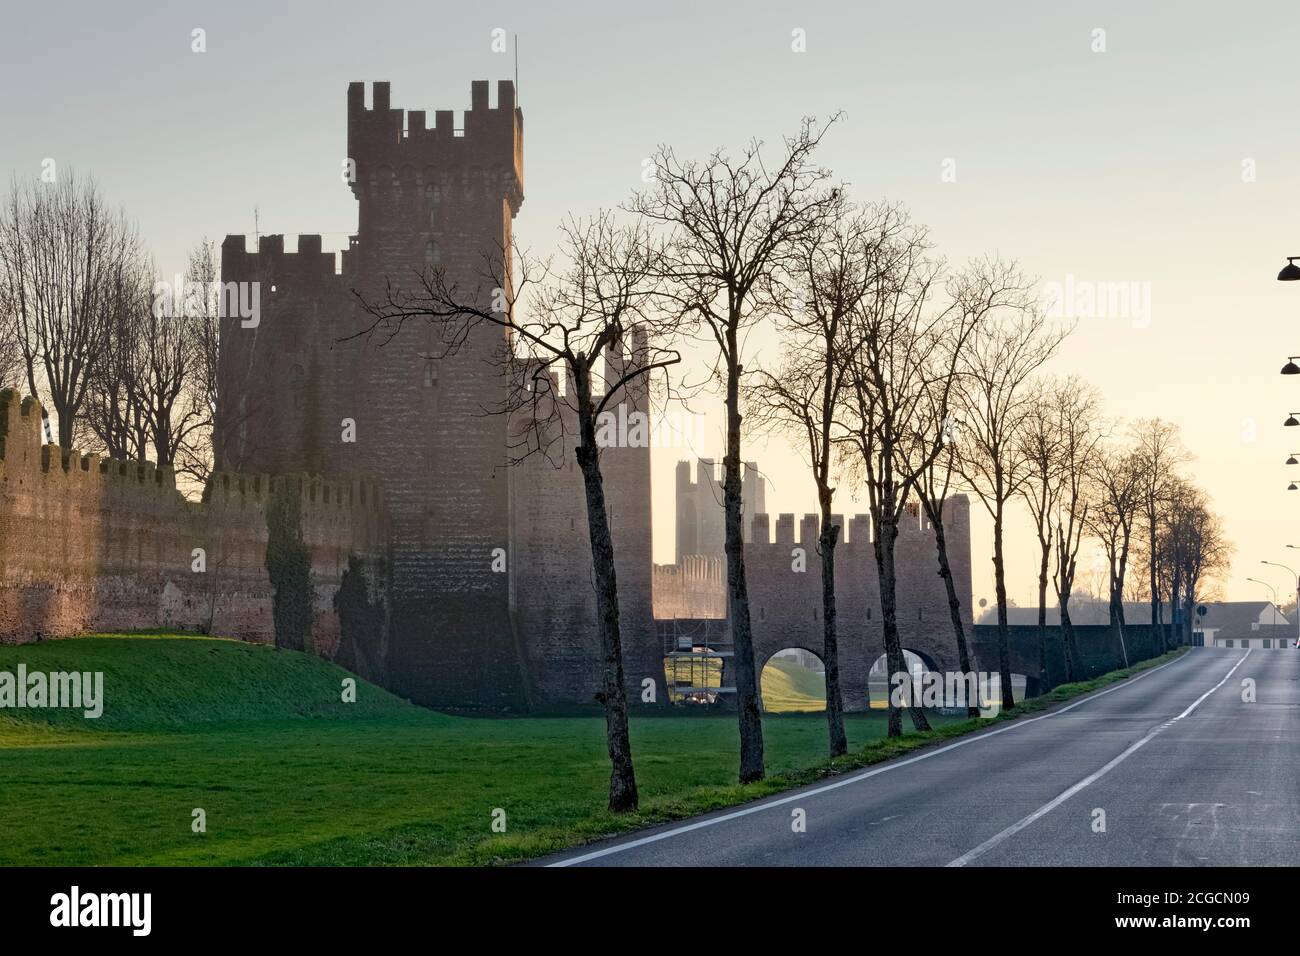 Rocca degli Alberi à Montagnana : forteresse médiévale construite par la dynastie des Carraresi. Province de Padoue, Vénétie, Italie, Europe. Banque D'Images